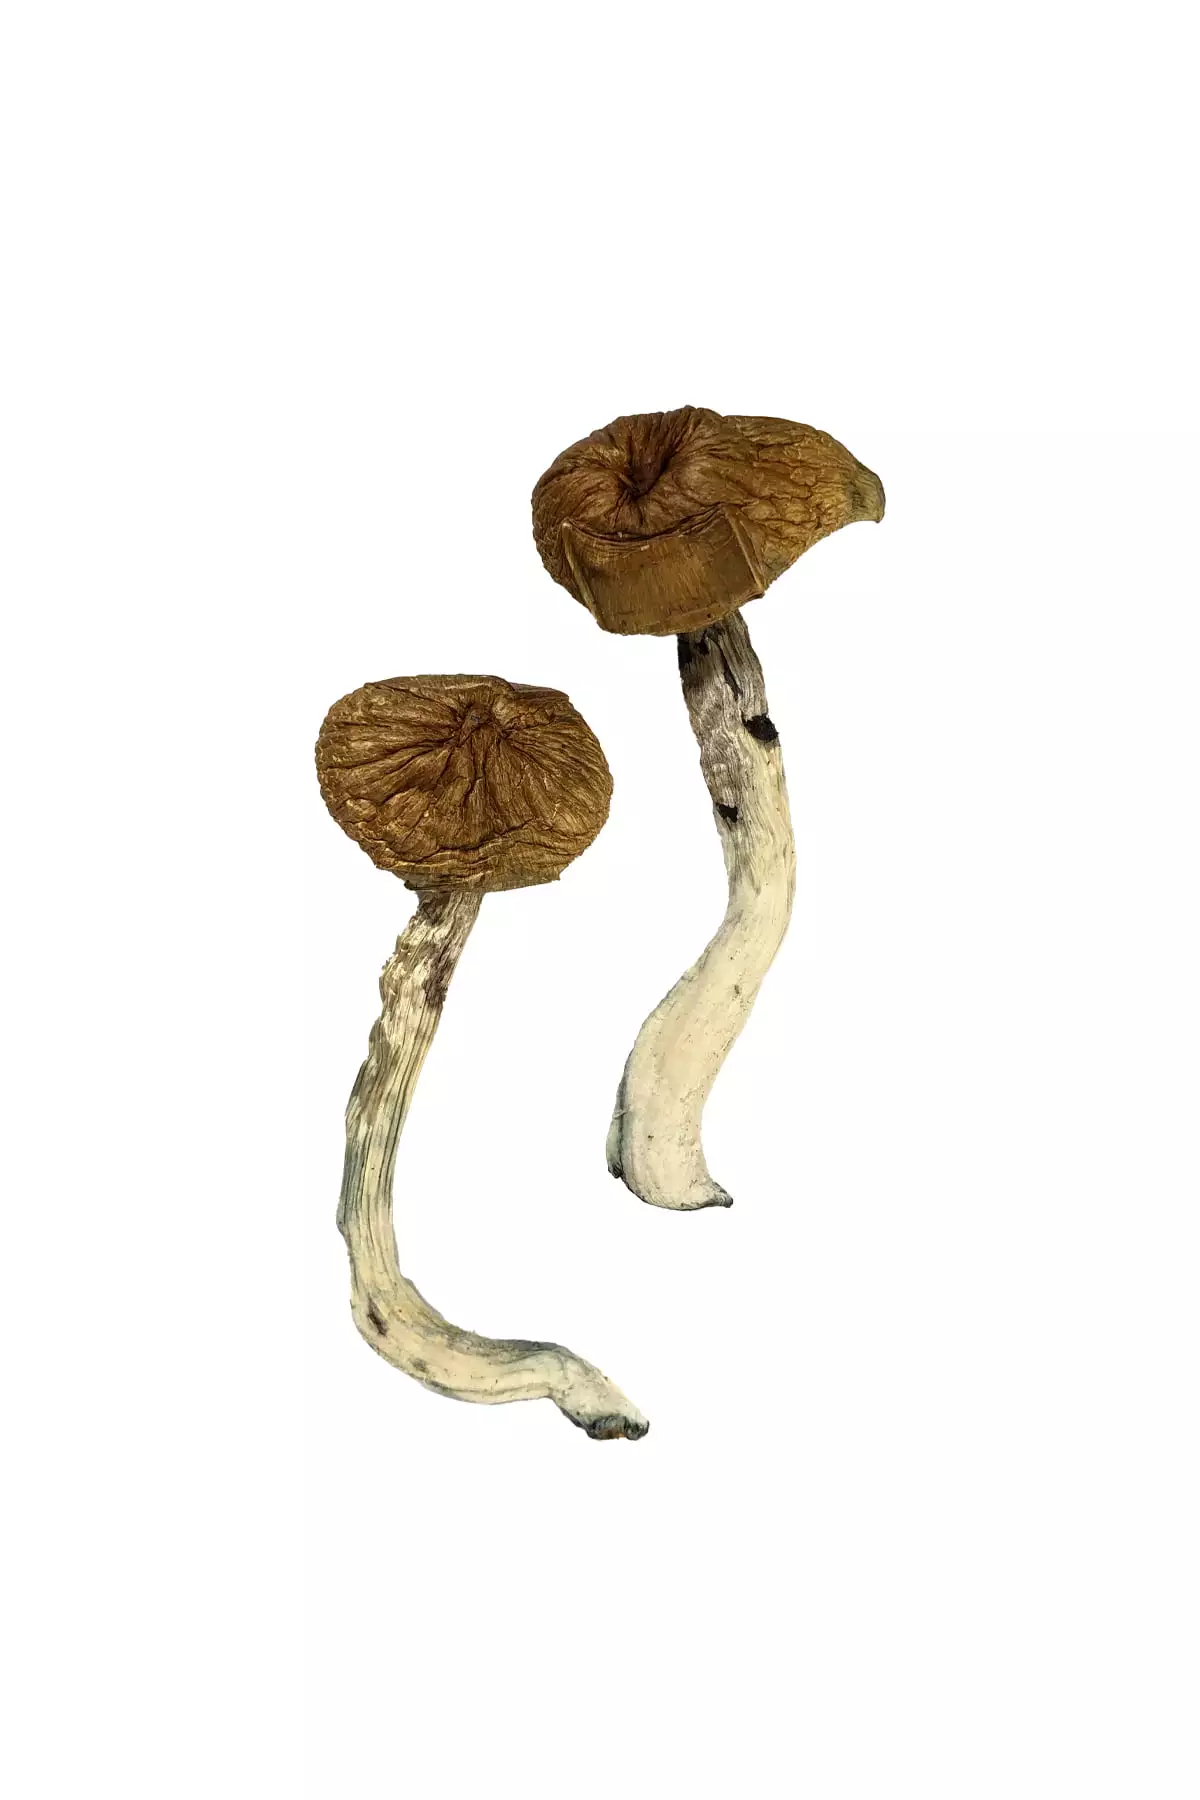 Buy Dancing Tiger Magic Mushrooms online